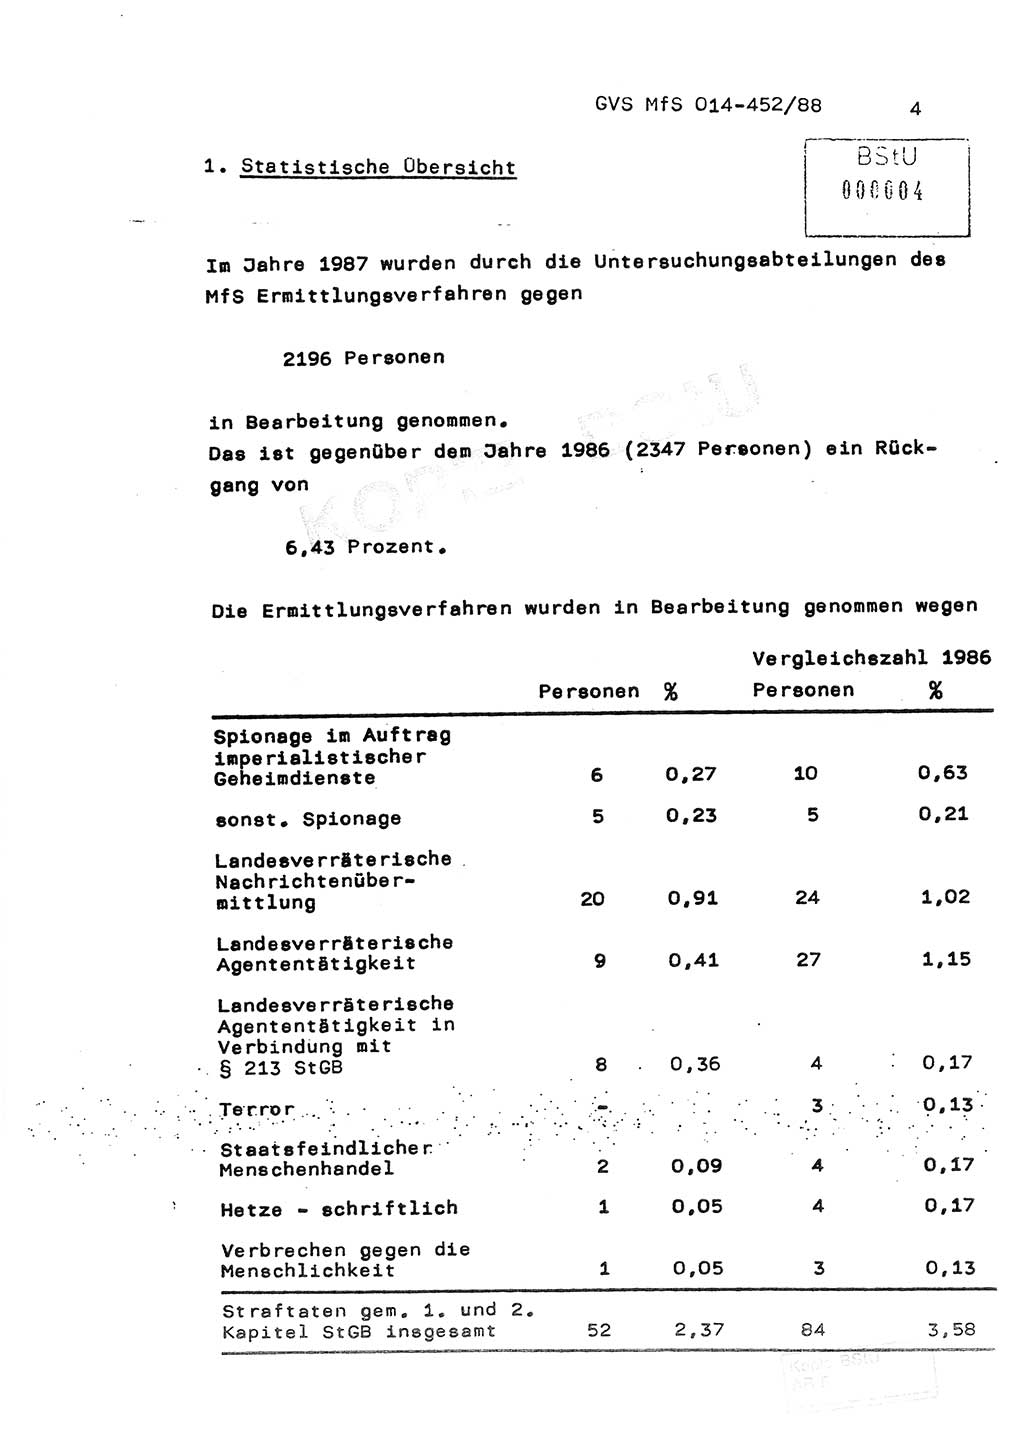 Jahresbericht der Hauptabteilung (HA) Ⅸ 1987, Einschätzung der Wirksamkeit der Untersuchungsarbeit im Jahre 1987, Ministerium für Staatssicherheit (MfS) der Deutschen Demokratischen Republik (DDR), Hauptabteilung Ⅸ, Geheime Verschlußsache (GVS) o014-452/88, Berlin 1988, Seite 4 (Einsch. MfS DDR HA Ⅸ GVS o014-452/88 1987, S. 4)